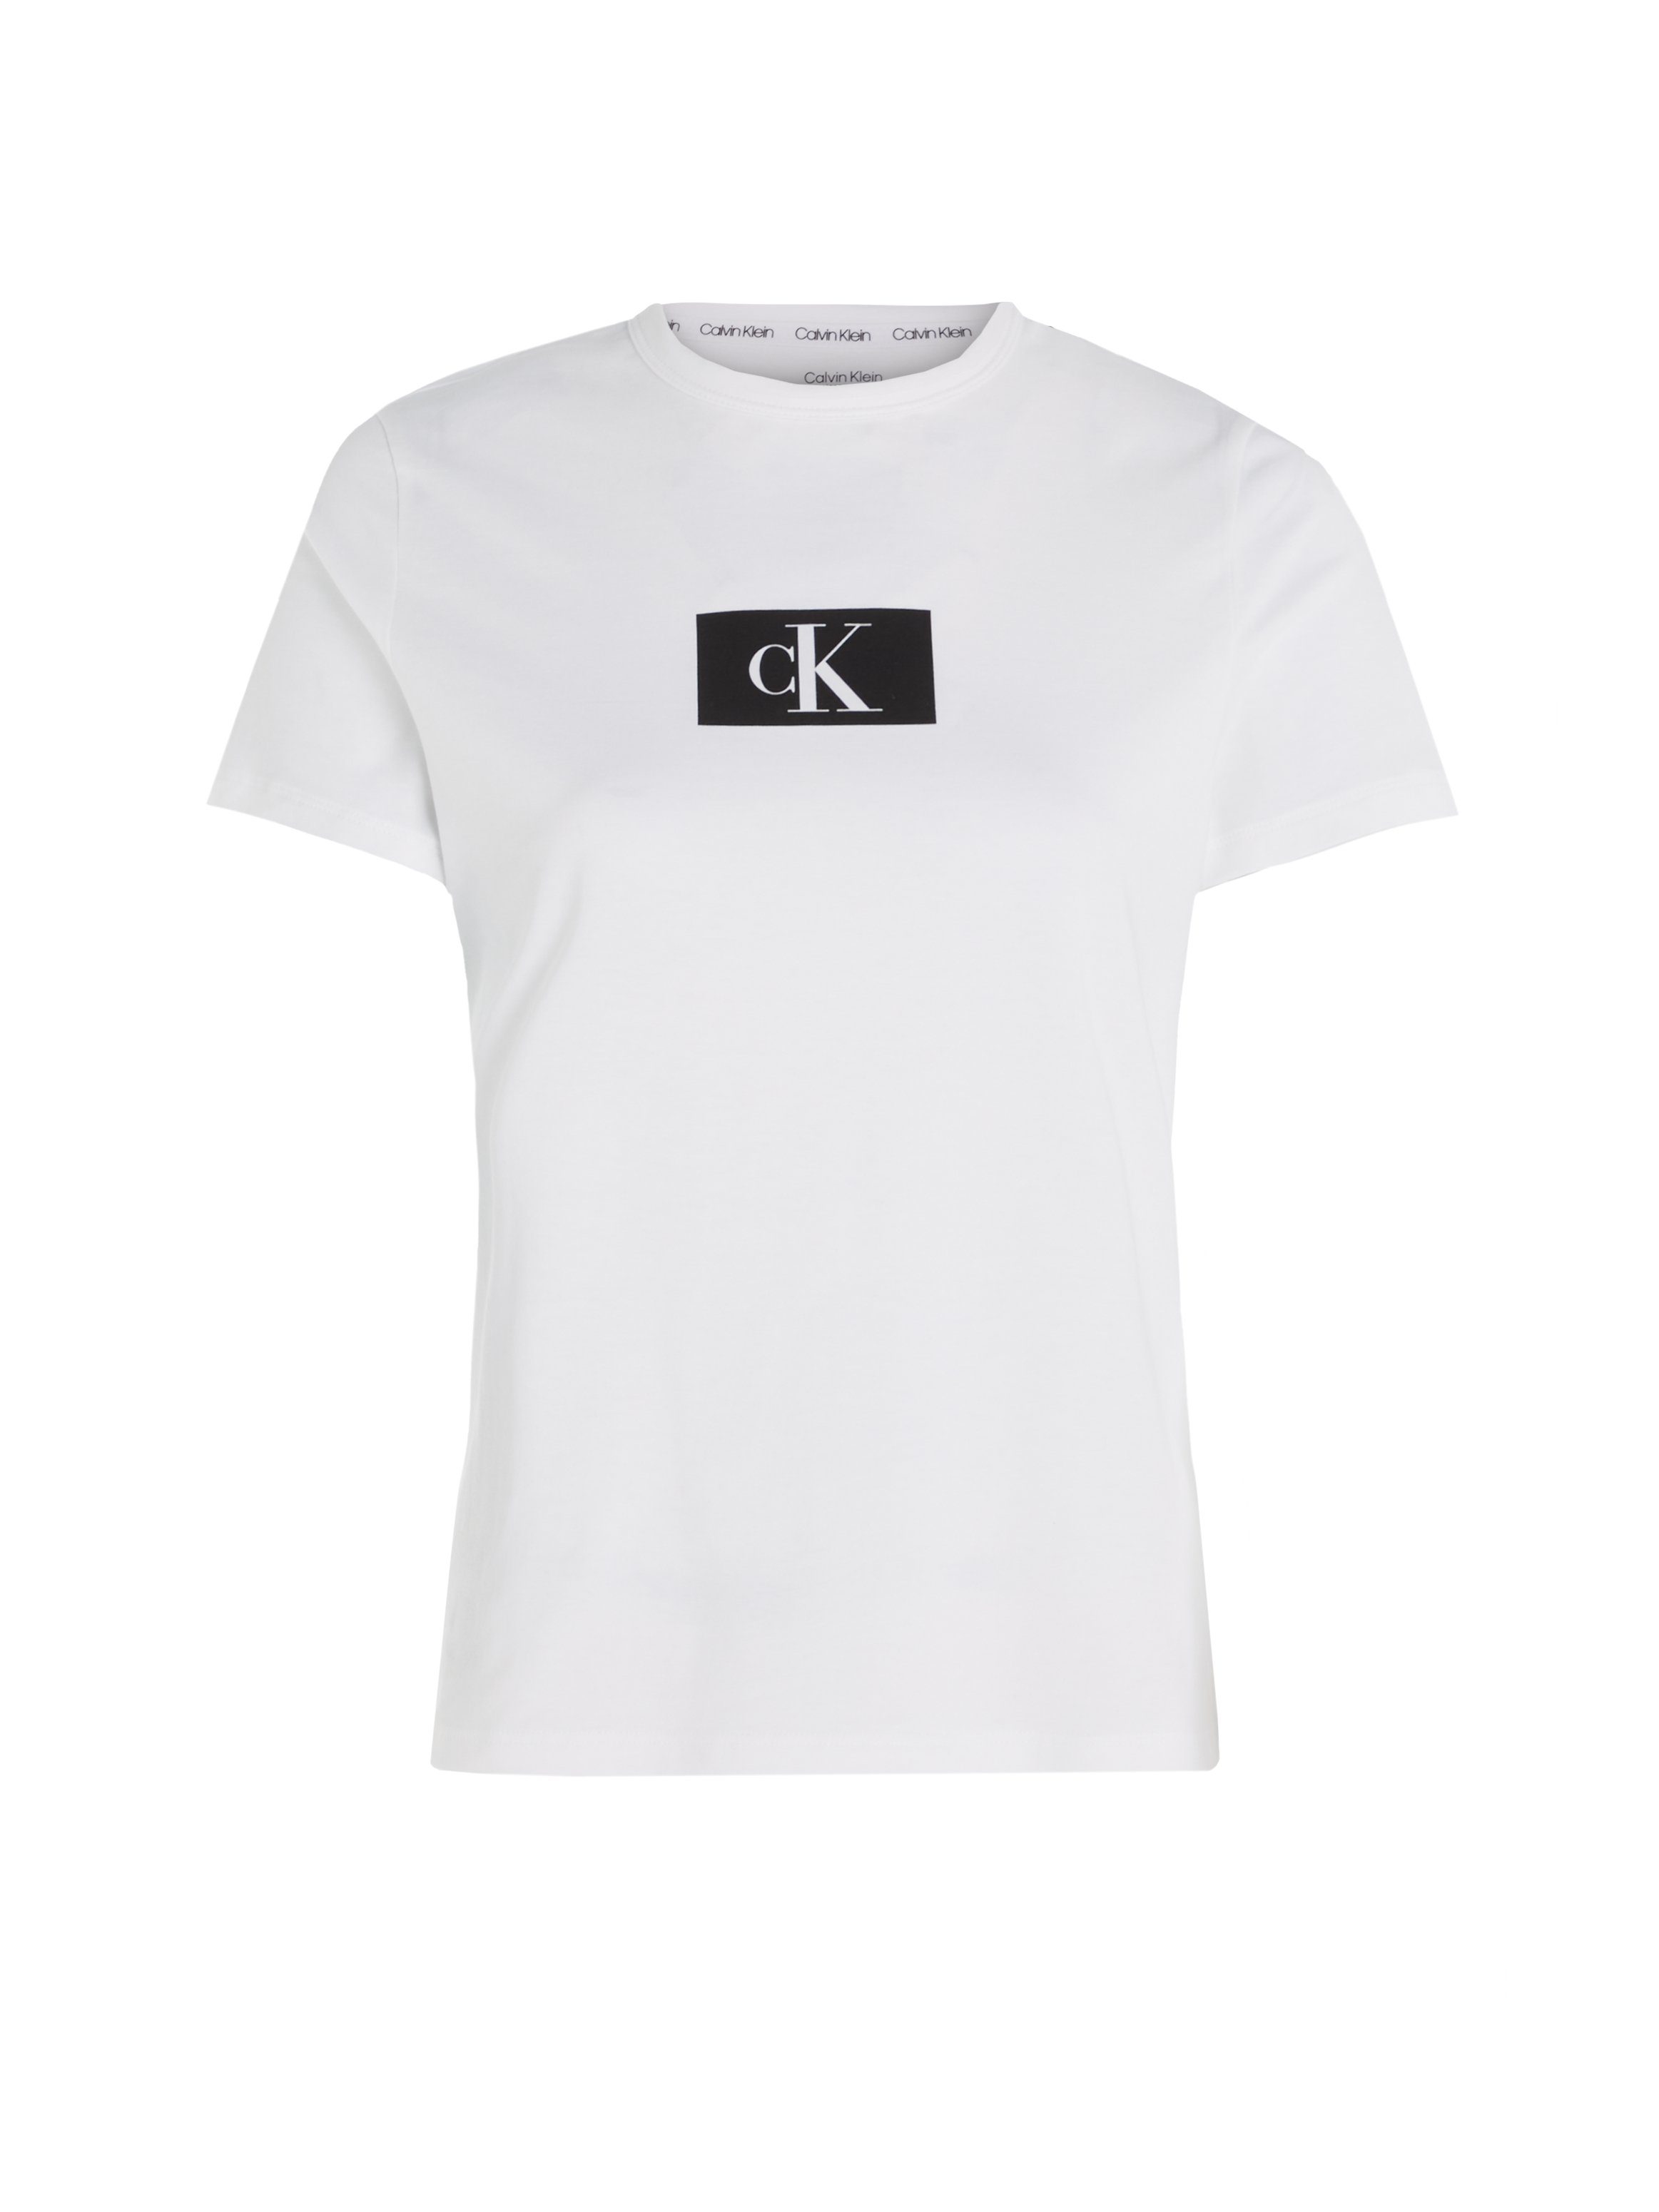 S/S WHITE Underwear NECK CREW Calvin Klein Kurzarmshirt